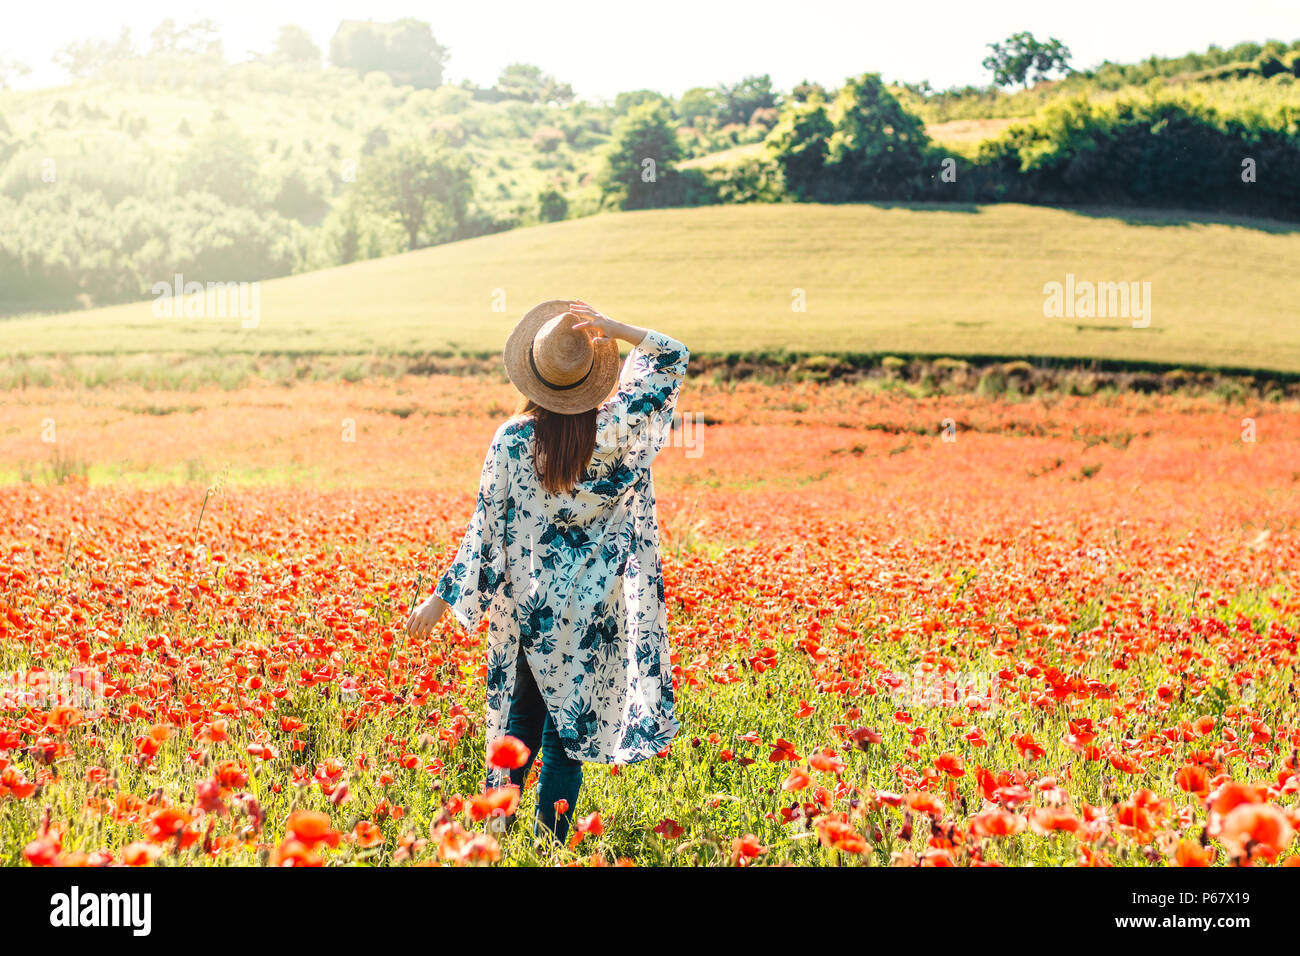 Zurück Blick auf eine junge Frau mit Strohhut und Blume drucken Kimono in einem Mohnfeld in einem sonnigen Tag. Stockfoto